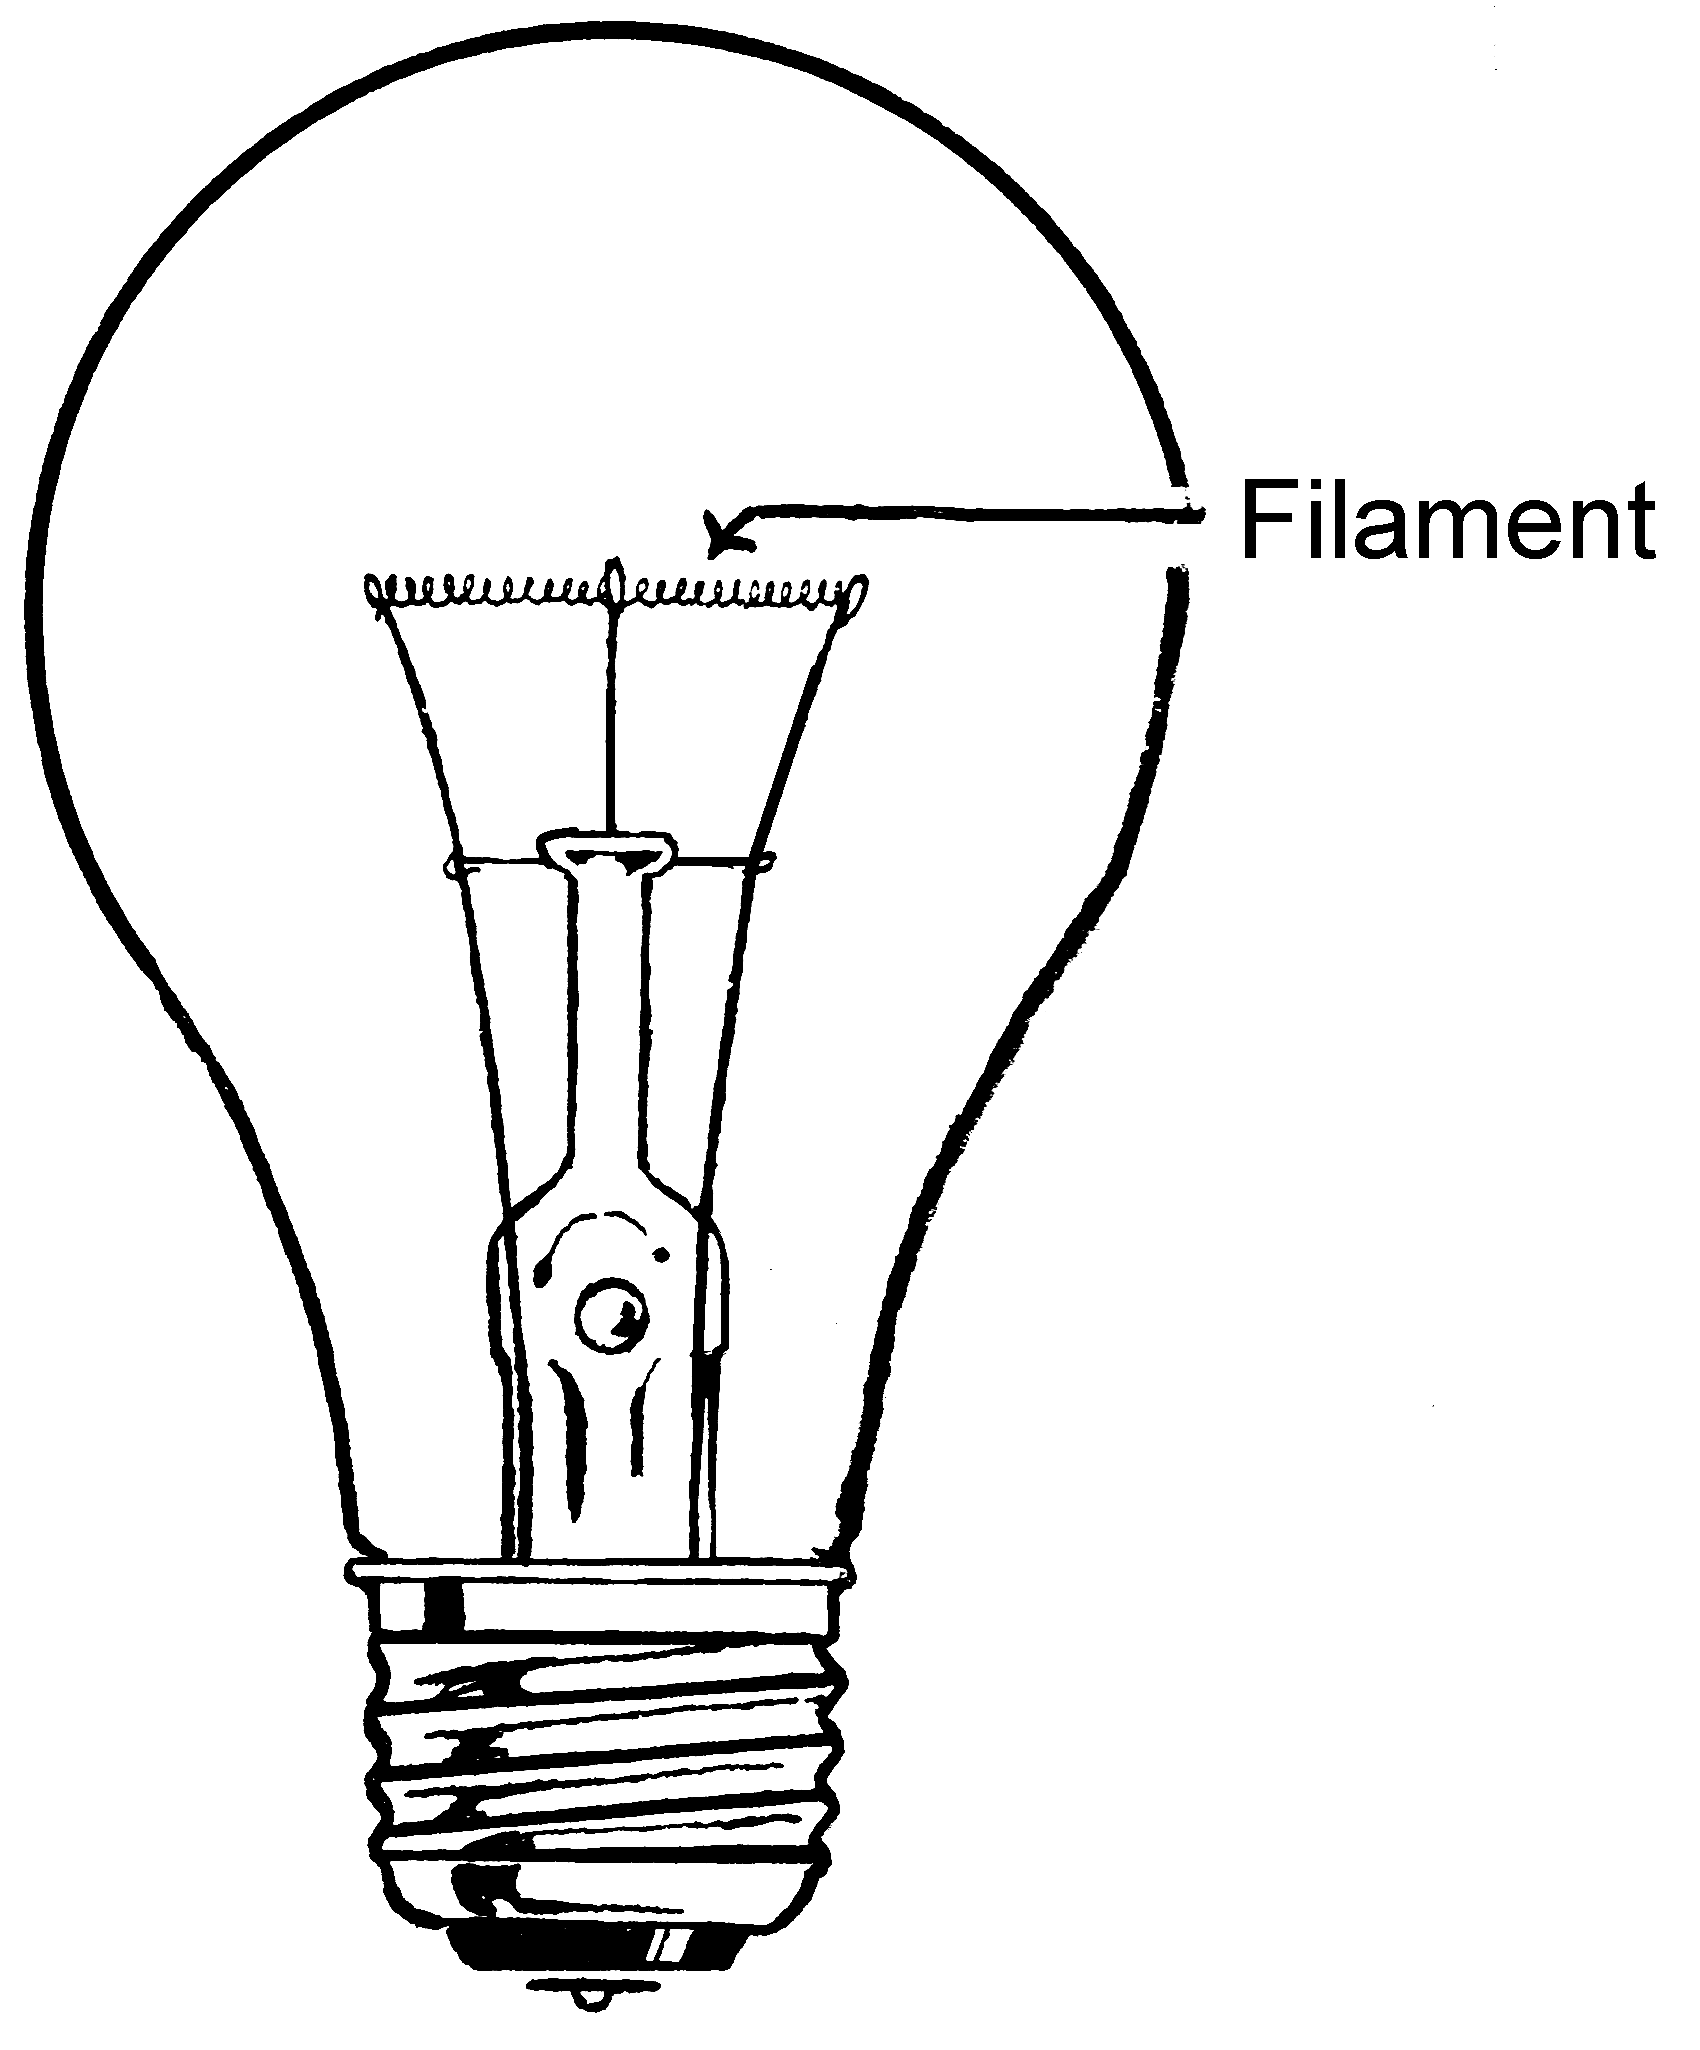 لامپ فیلامنتی چیست-محاسن و معایب لامپ فیلامنتی